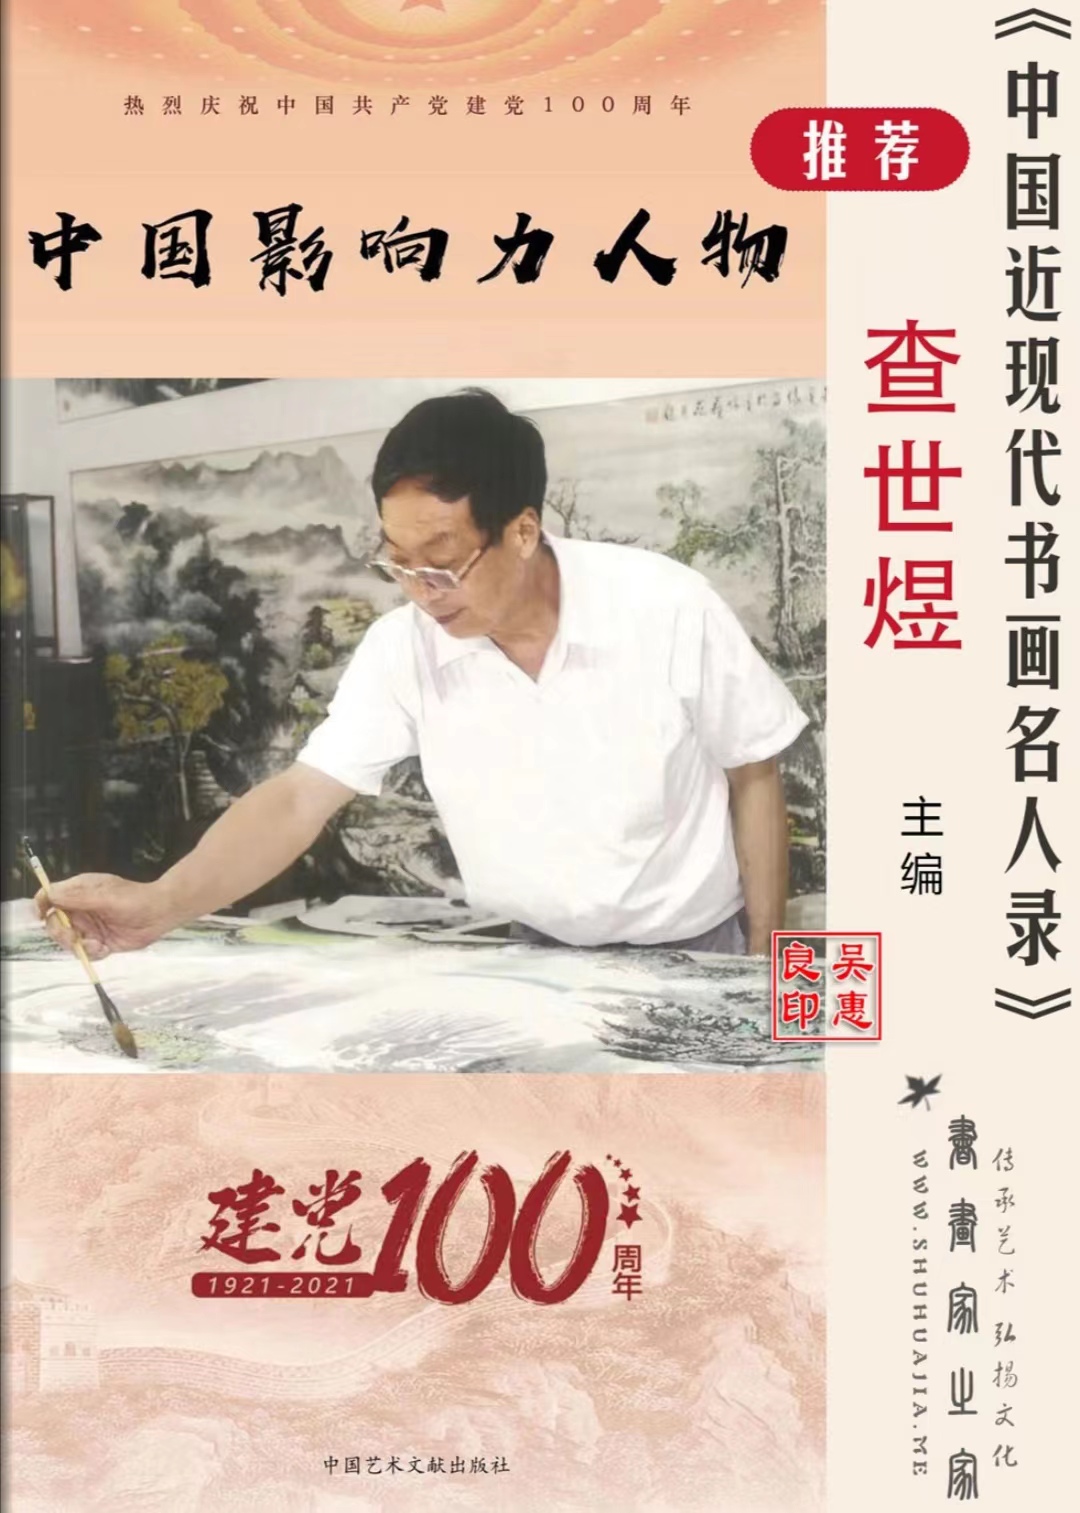 中国最具收藏与投资的艺术家-查世煜